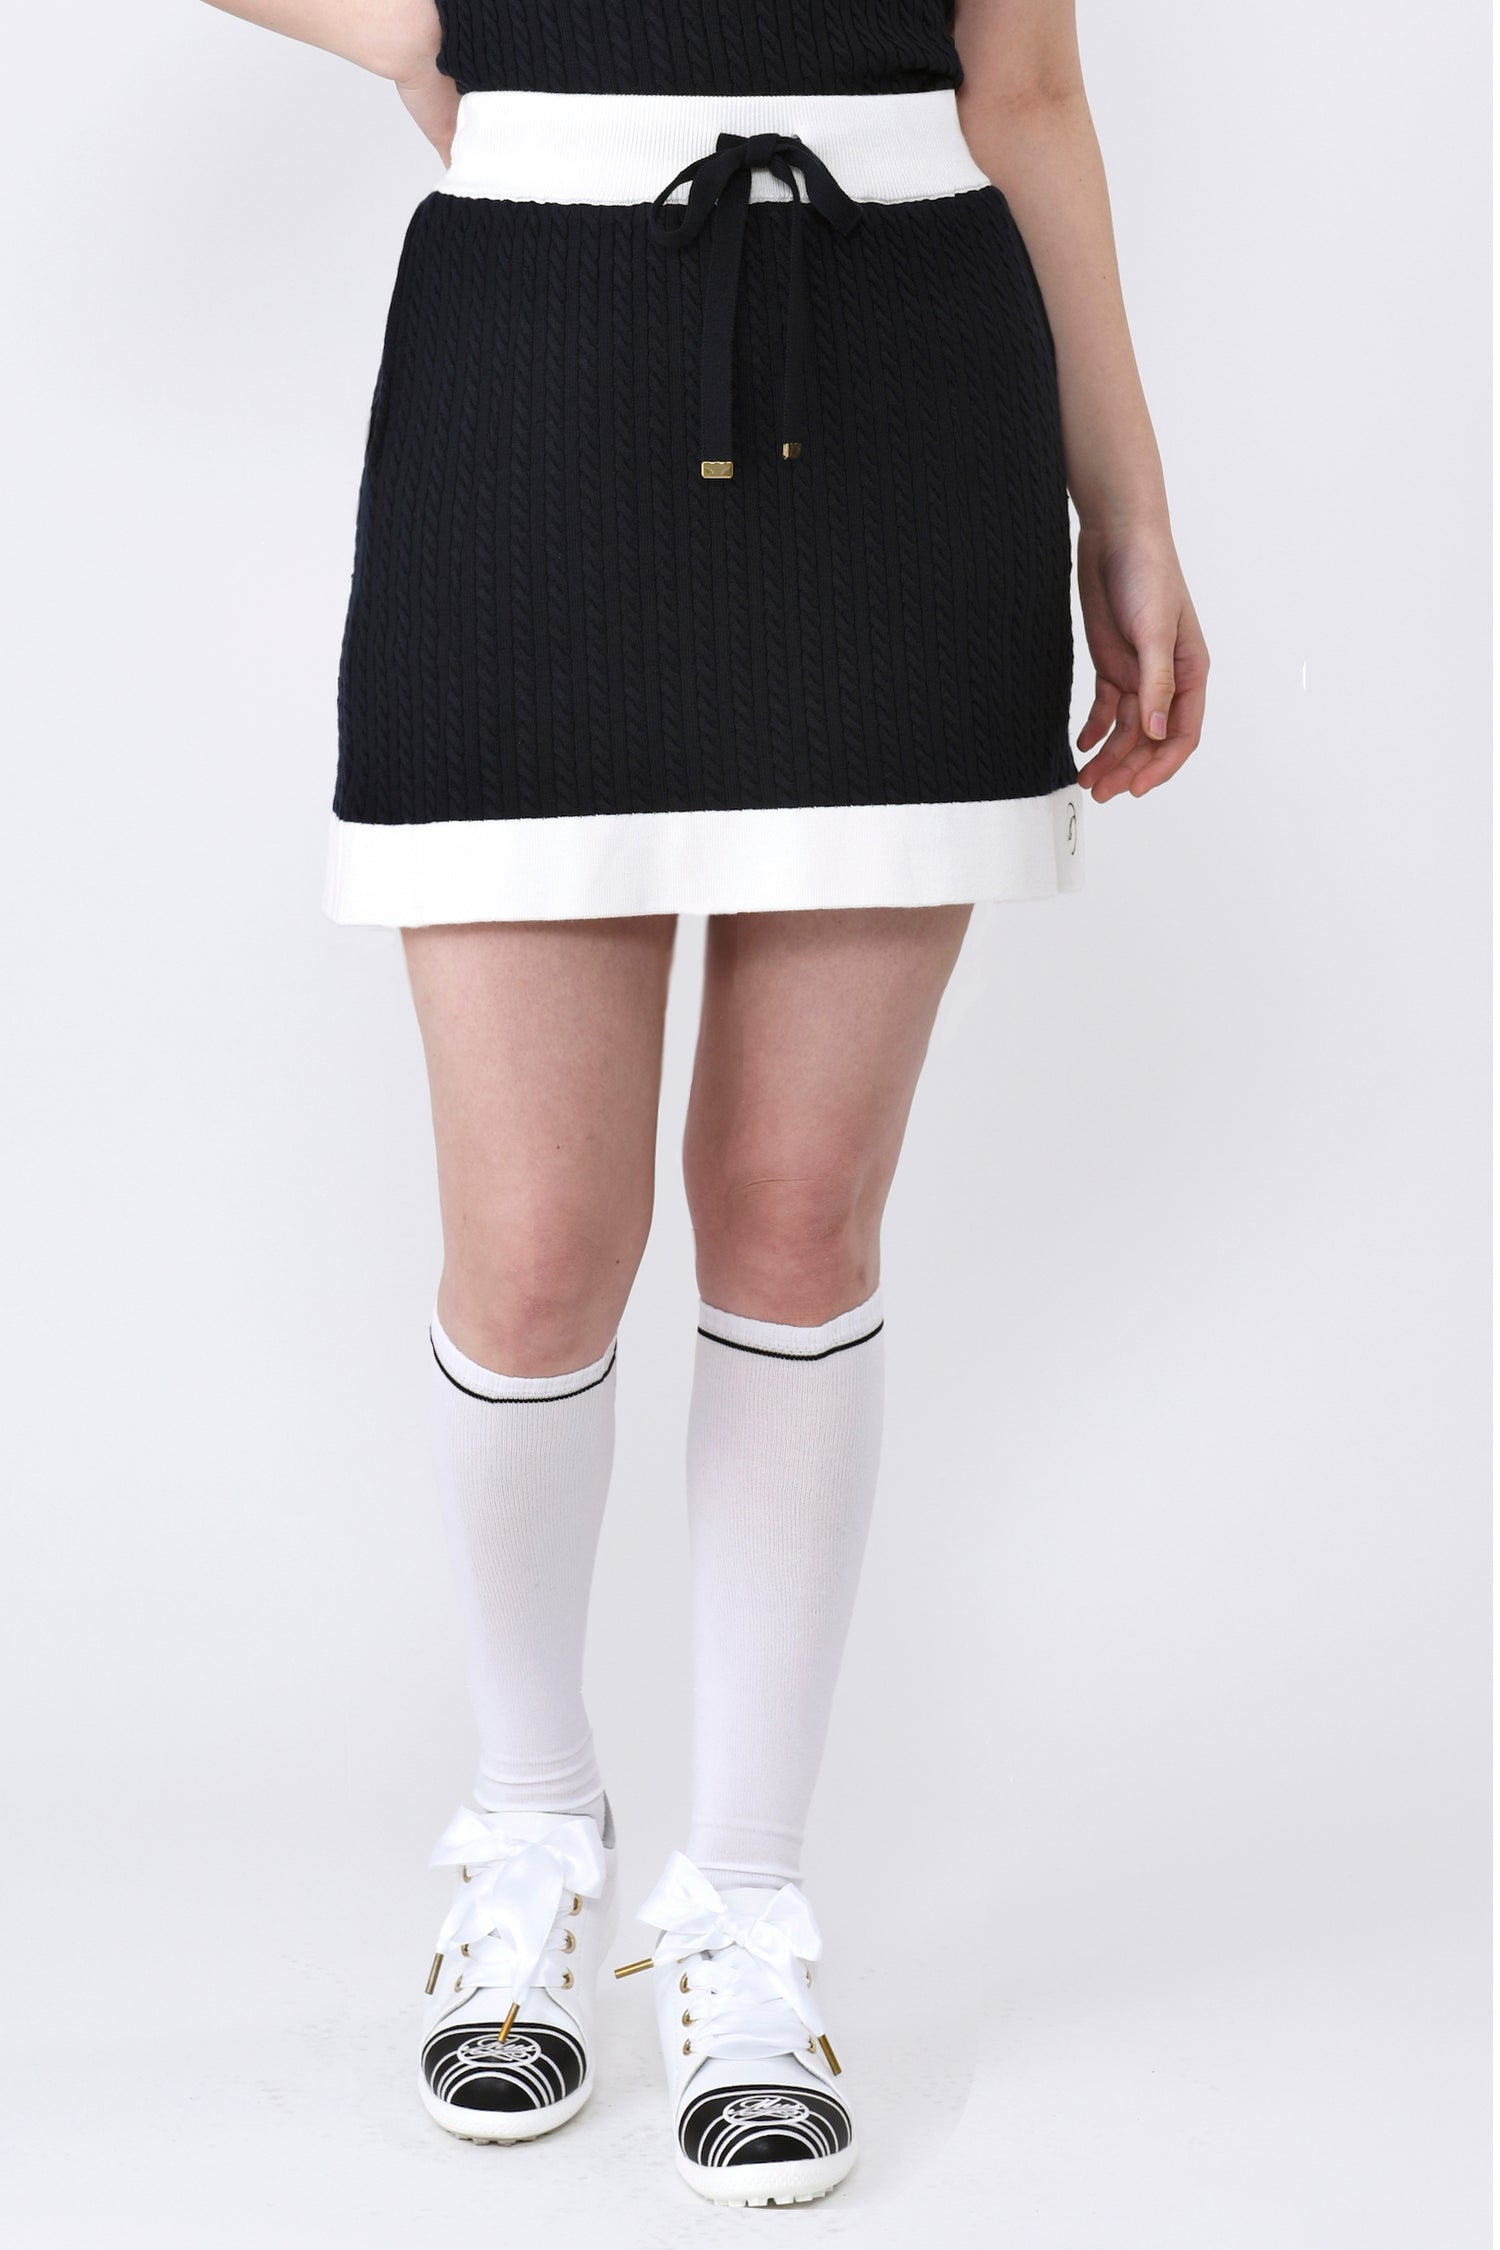 微絞雙色針織裙(701J1504)